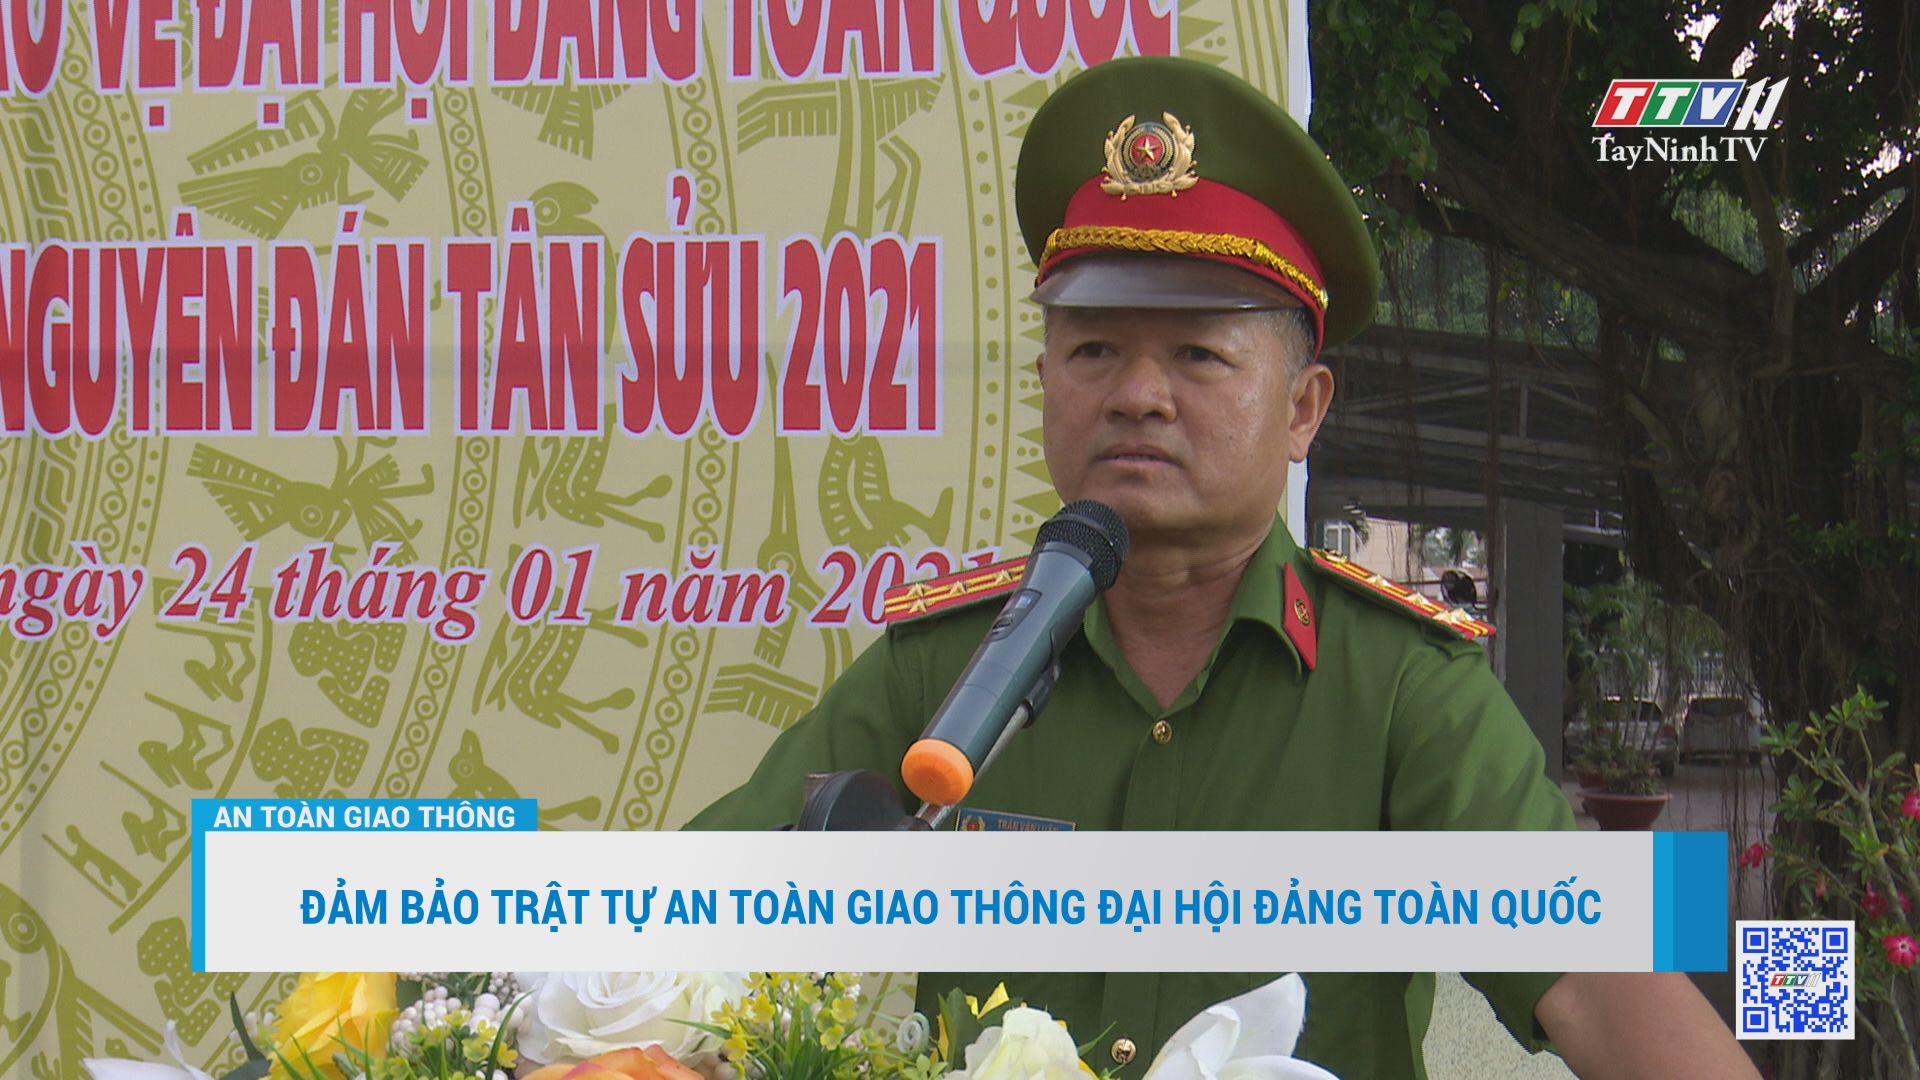 Đảm bảo trật tự an toàn giao thông Đại hội Đảng toàn quốc | AN TOÀN GIAO THÔNG | TayNinhTV